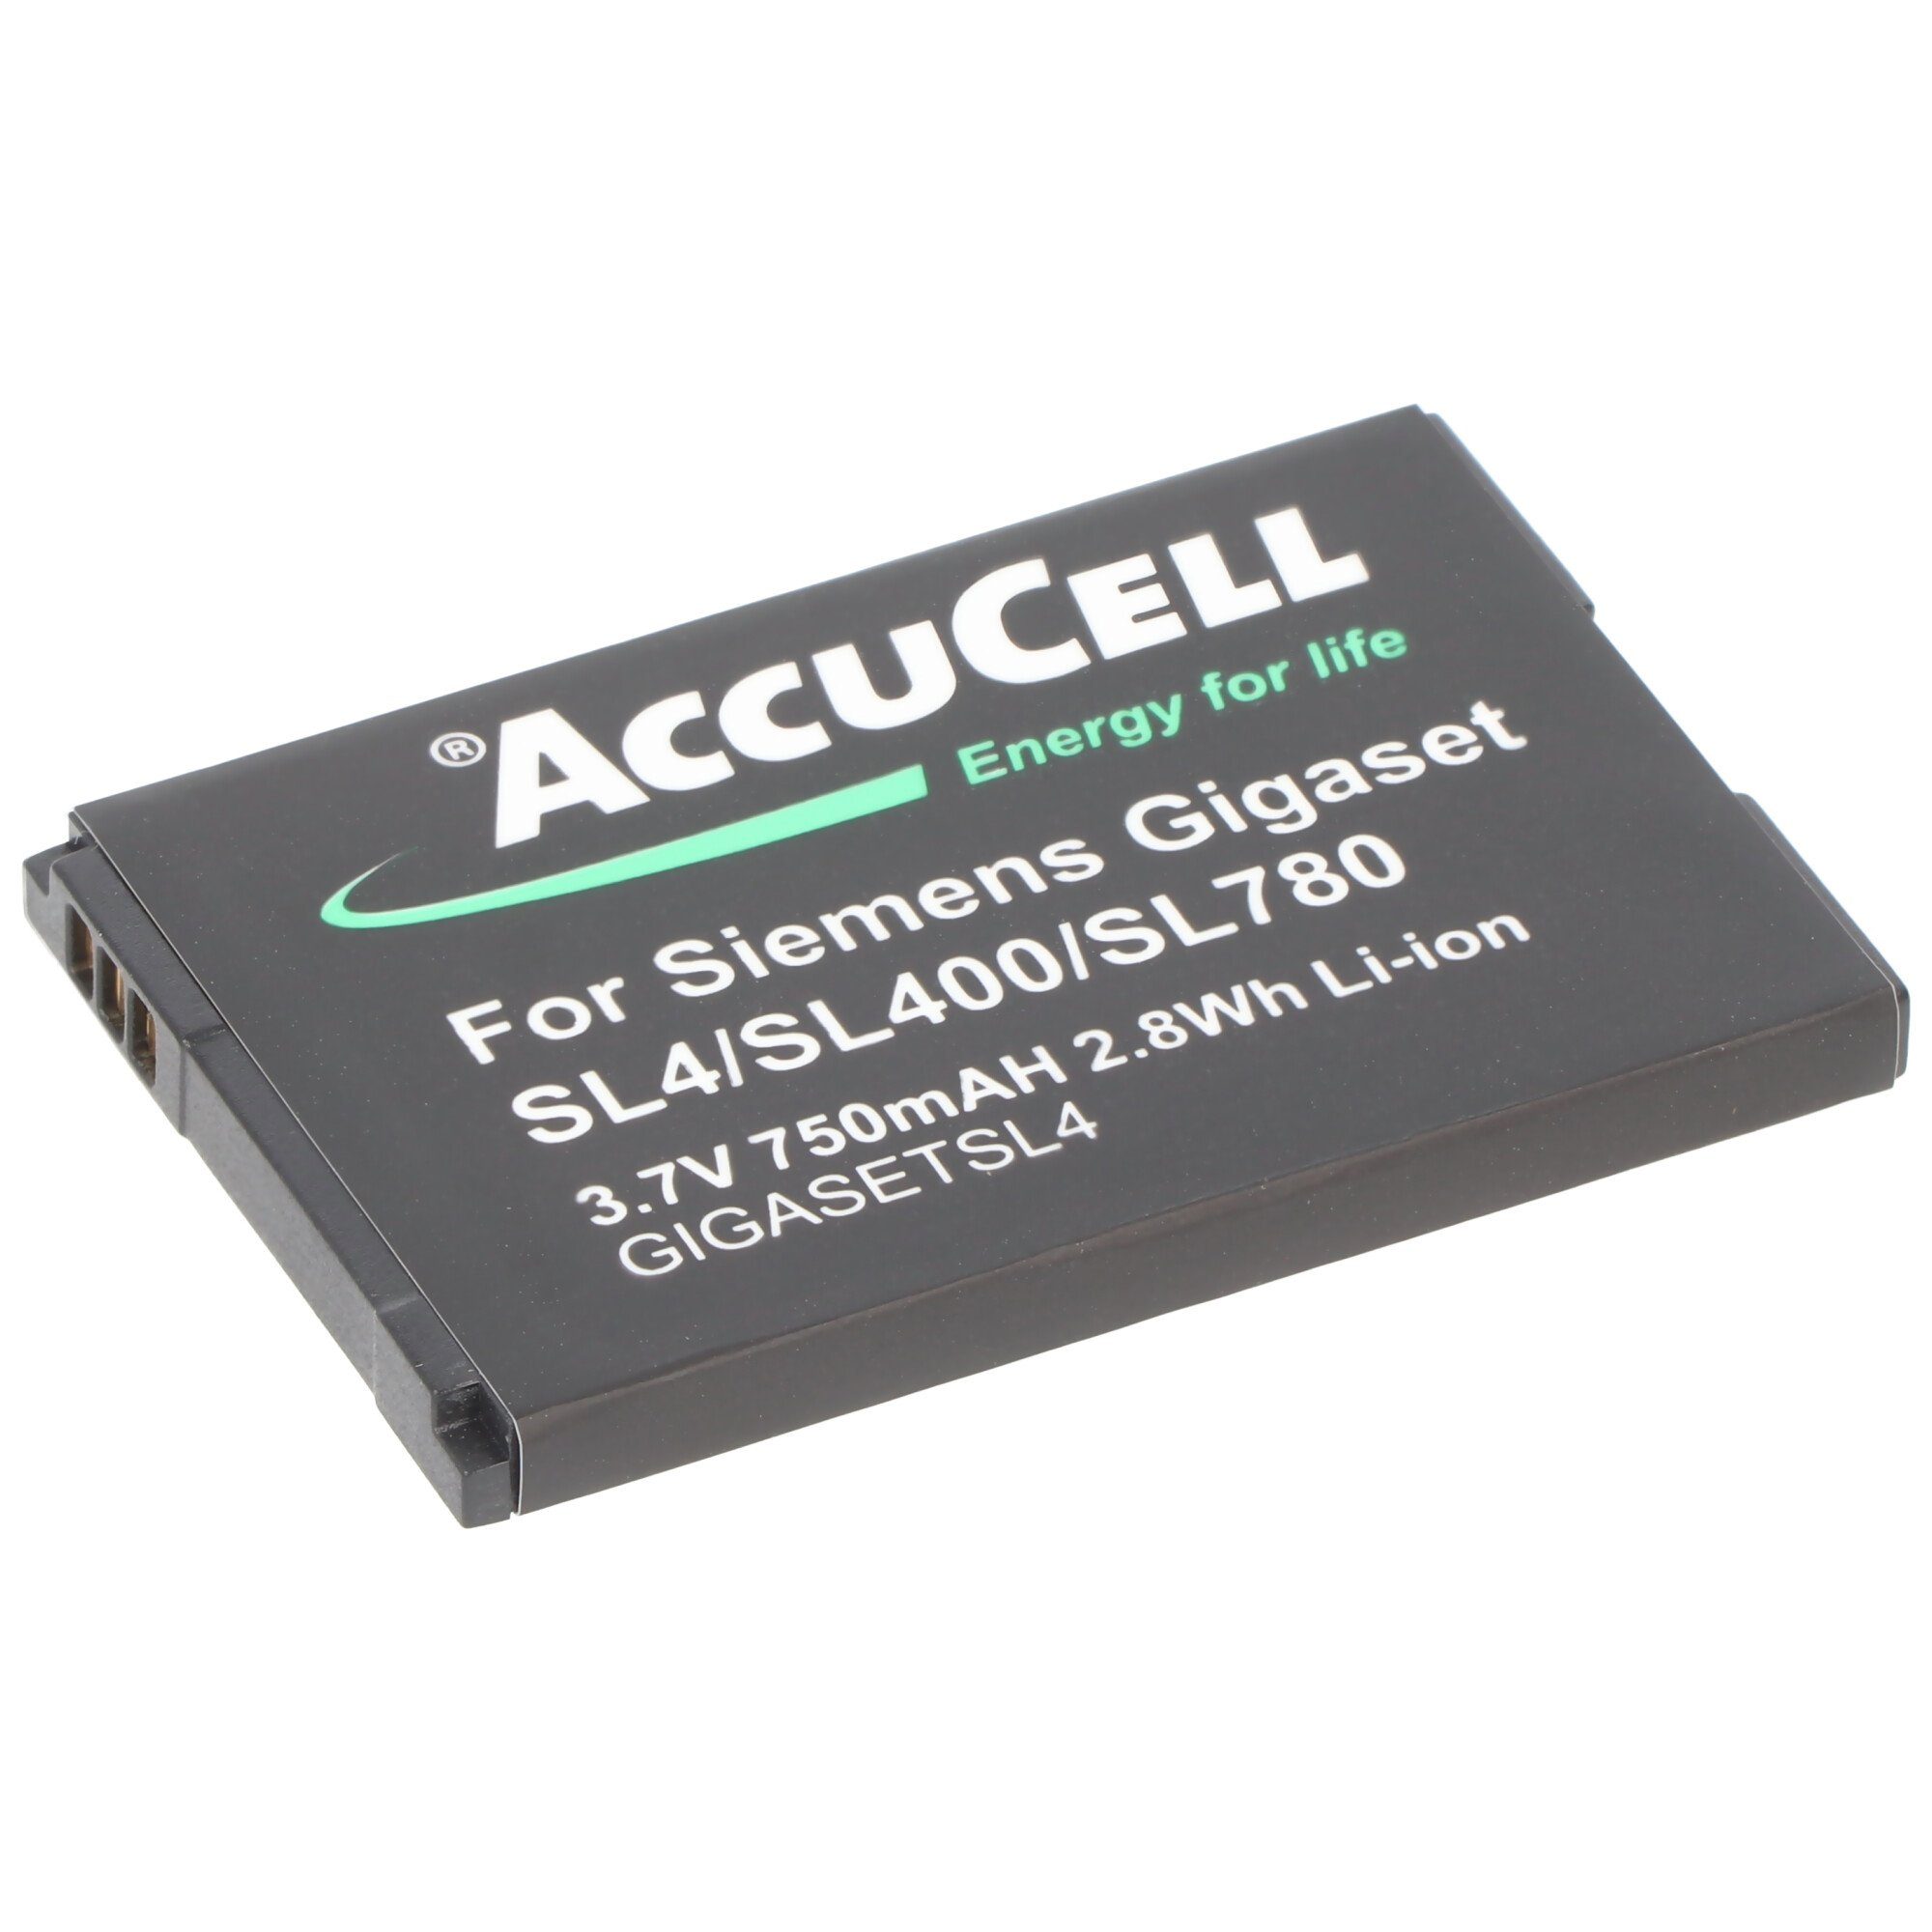 AccuCell Akku passend für Siemens Gigaset V30145-K1310K-X444, V30145-K1310-X44 Akku 700 mAh (3,7 V)